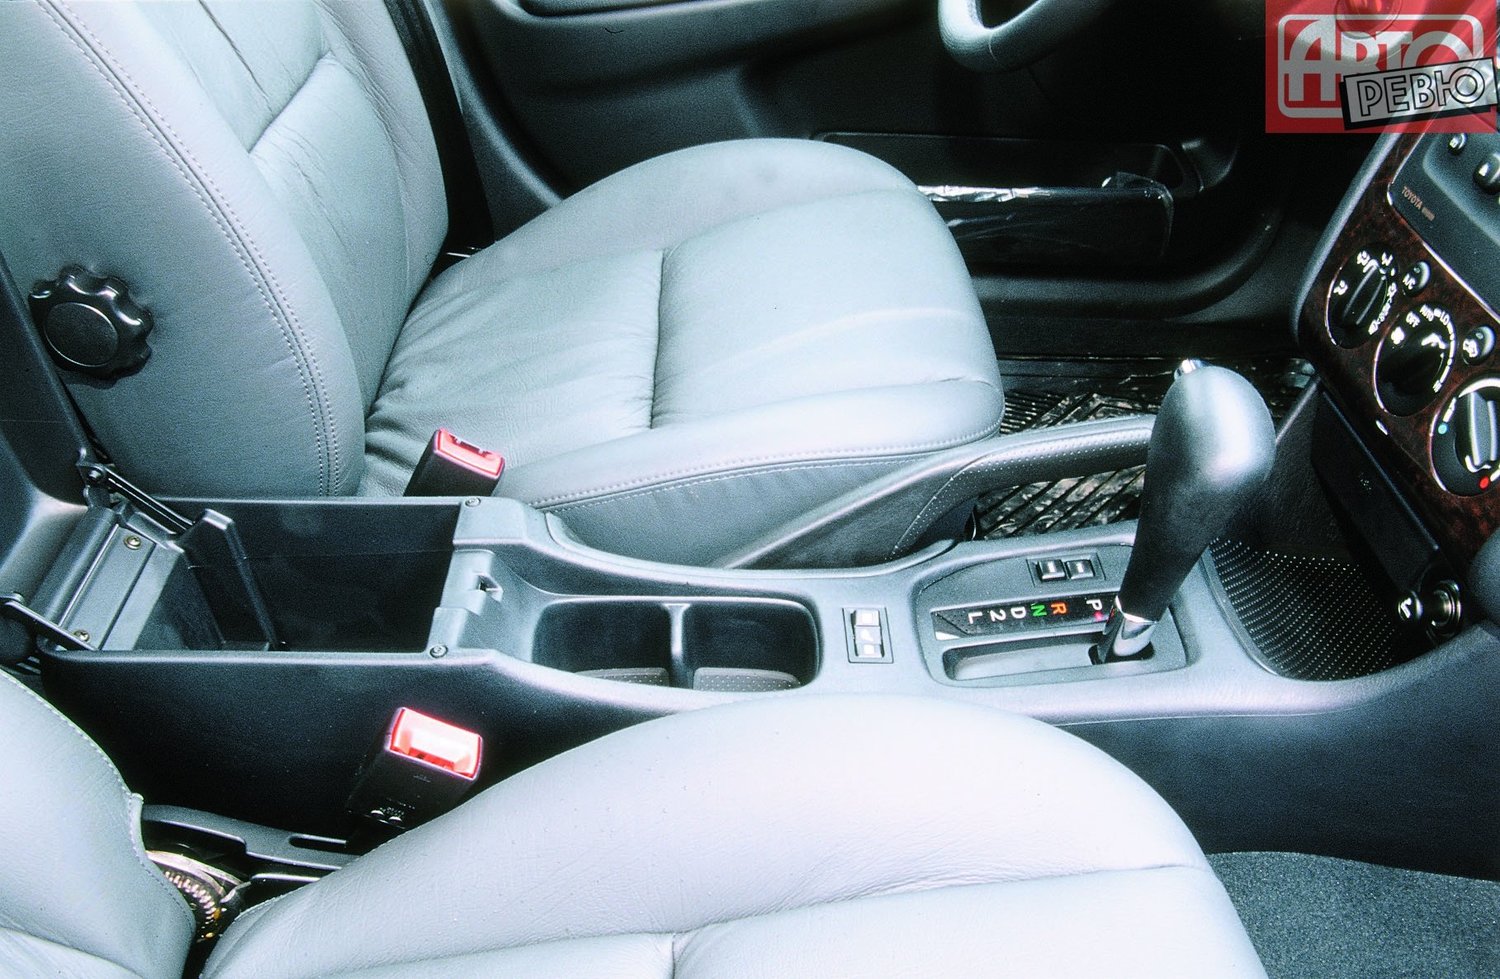 универсал Toyota Avensis 2000 - 2003г выпуска модификация 1.6 MT (110 л.с.)